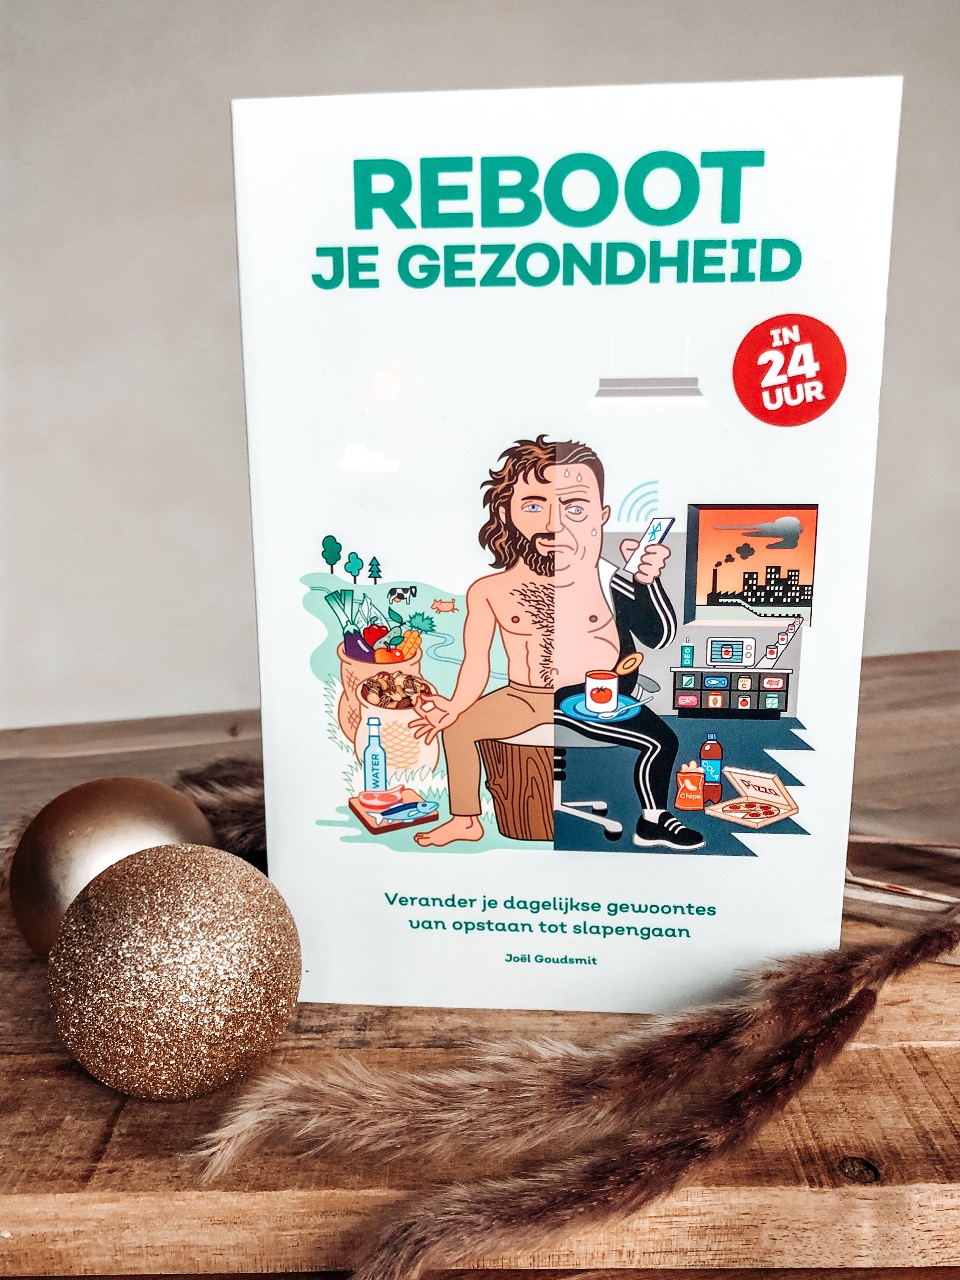 Ralph Moorman & Juglen Zwaan Favourits Jouwbox Kerst Editie, Boek Reboot je Gezondheid in 24uur!